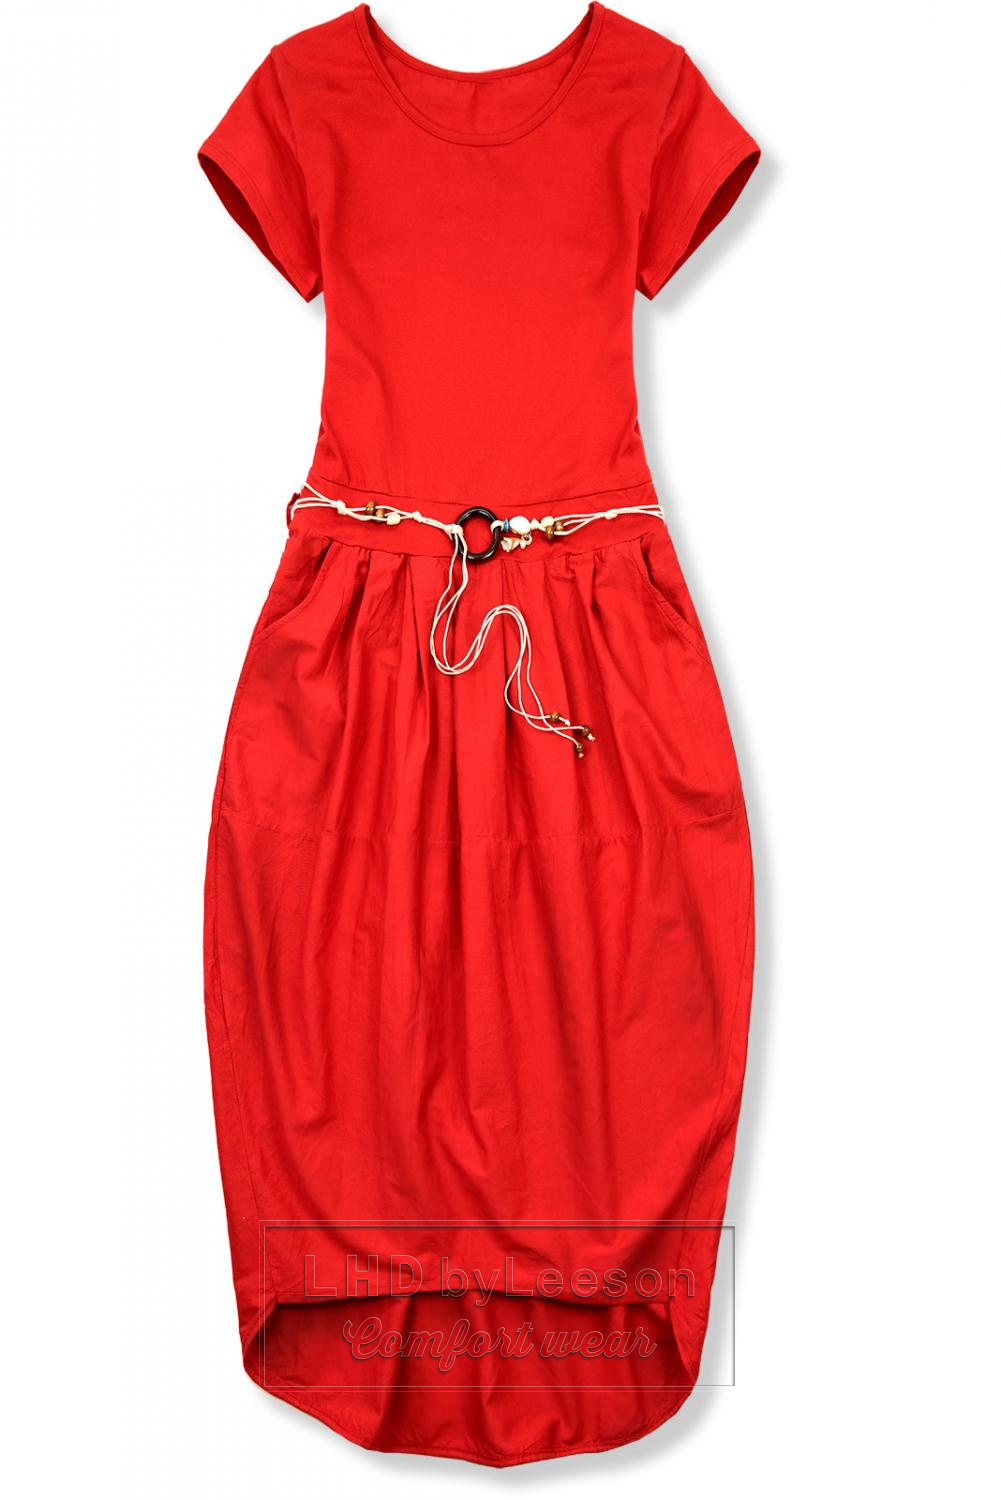 Czerwona midi sukienka w stylu basic